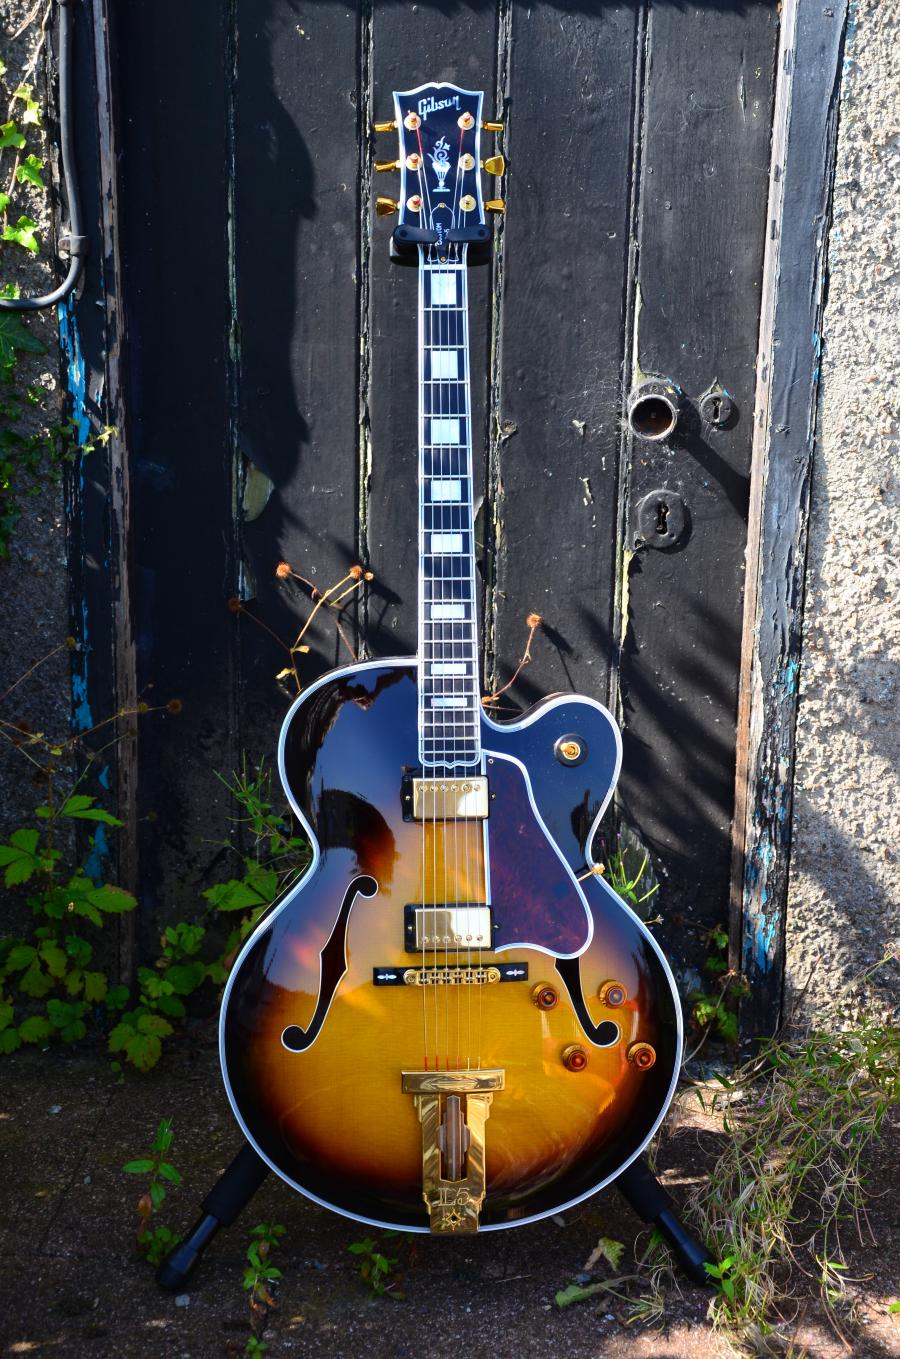 The Venerable Gibson L-5-dsc_7811-jpg